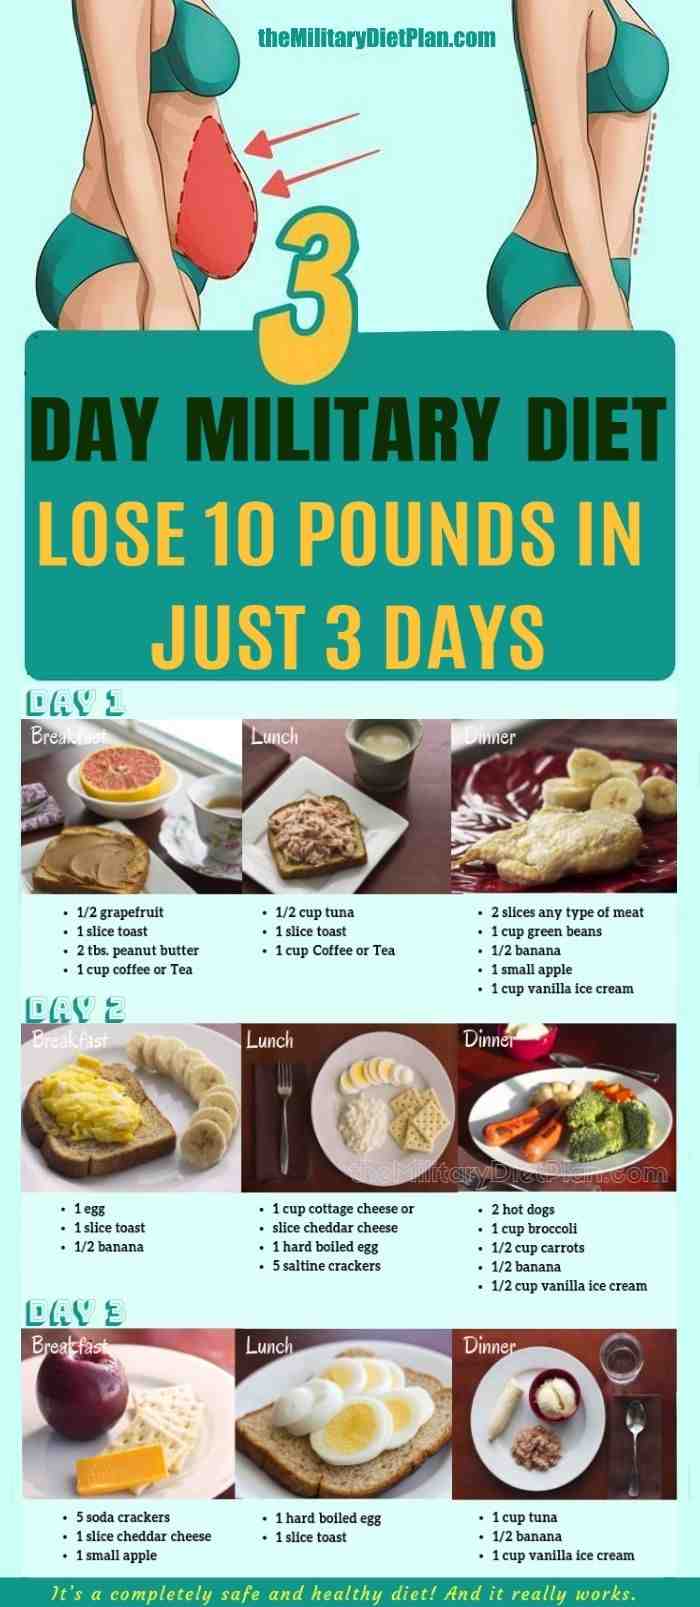 Comment perdre 3 kg en 4 jours ?